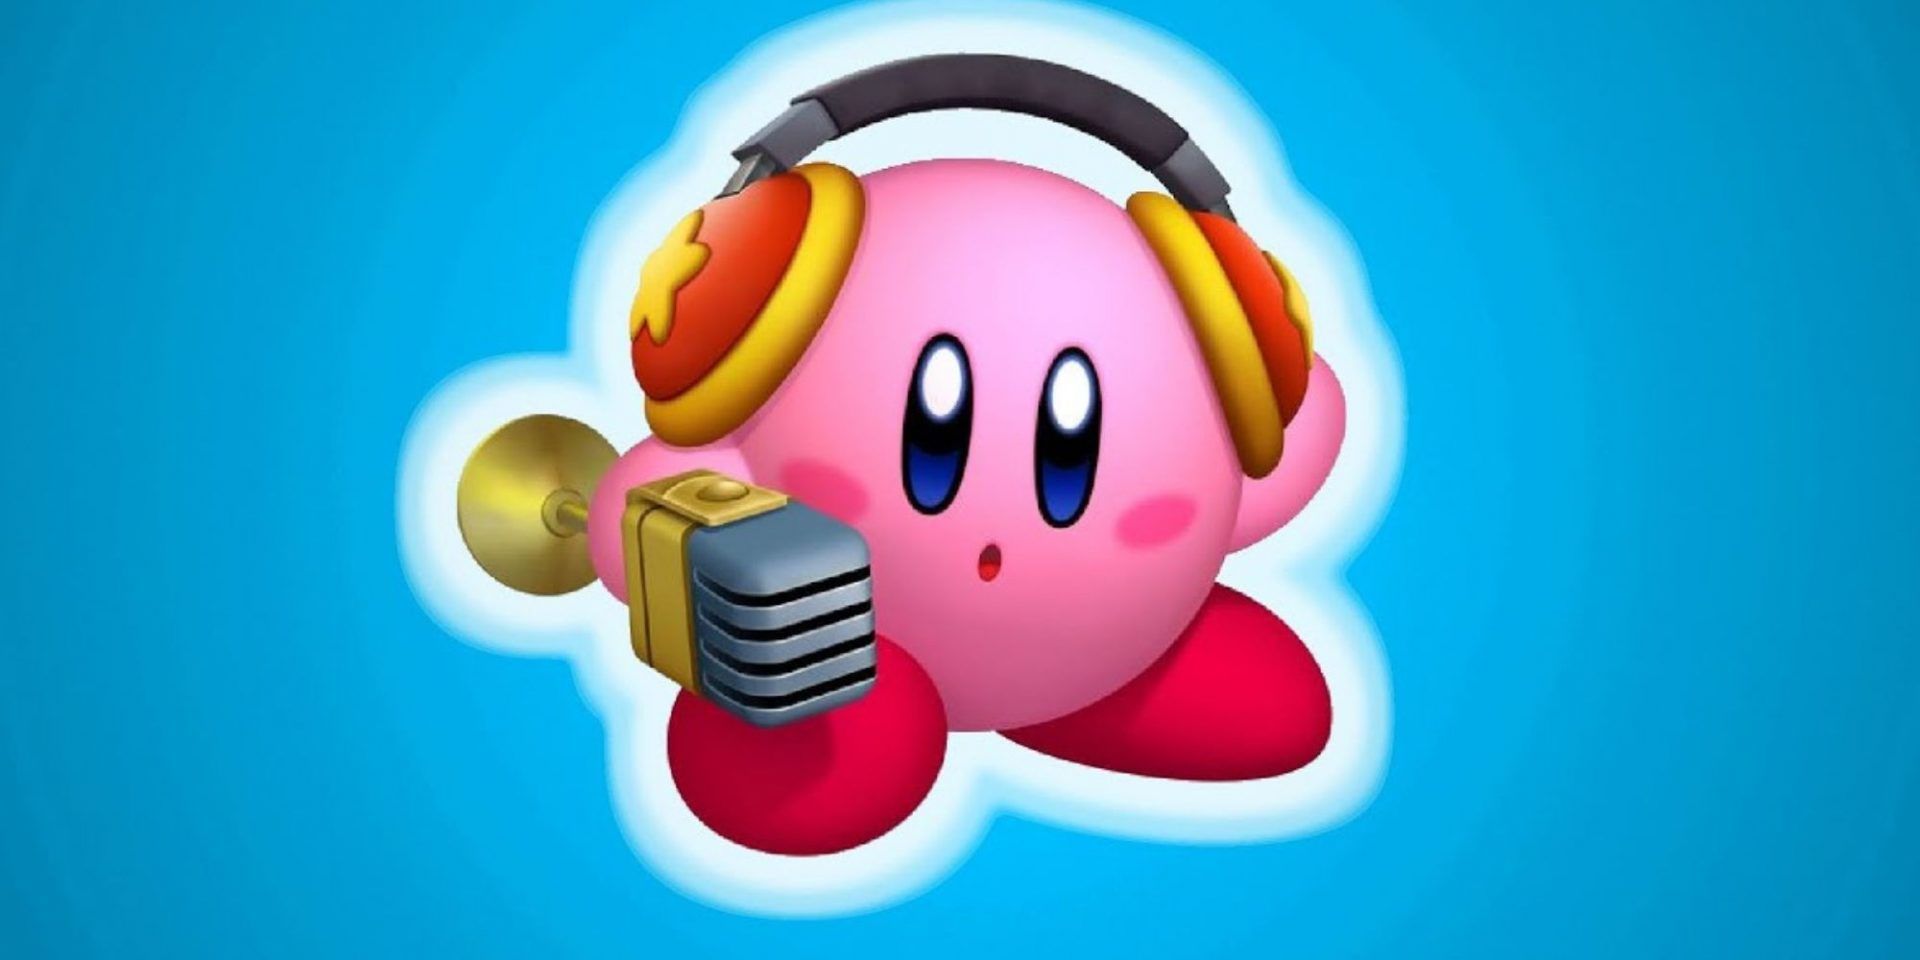 Kirby wearing headphones